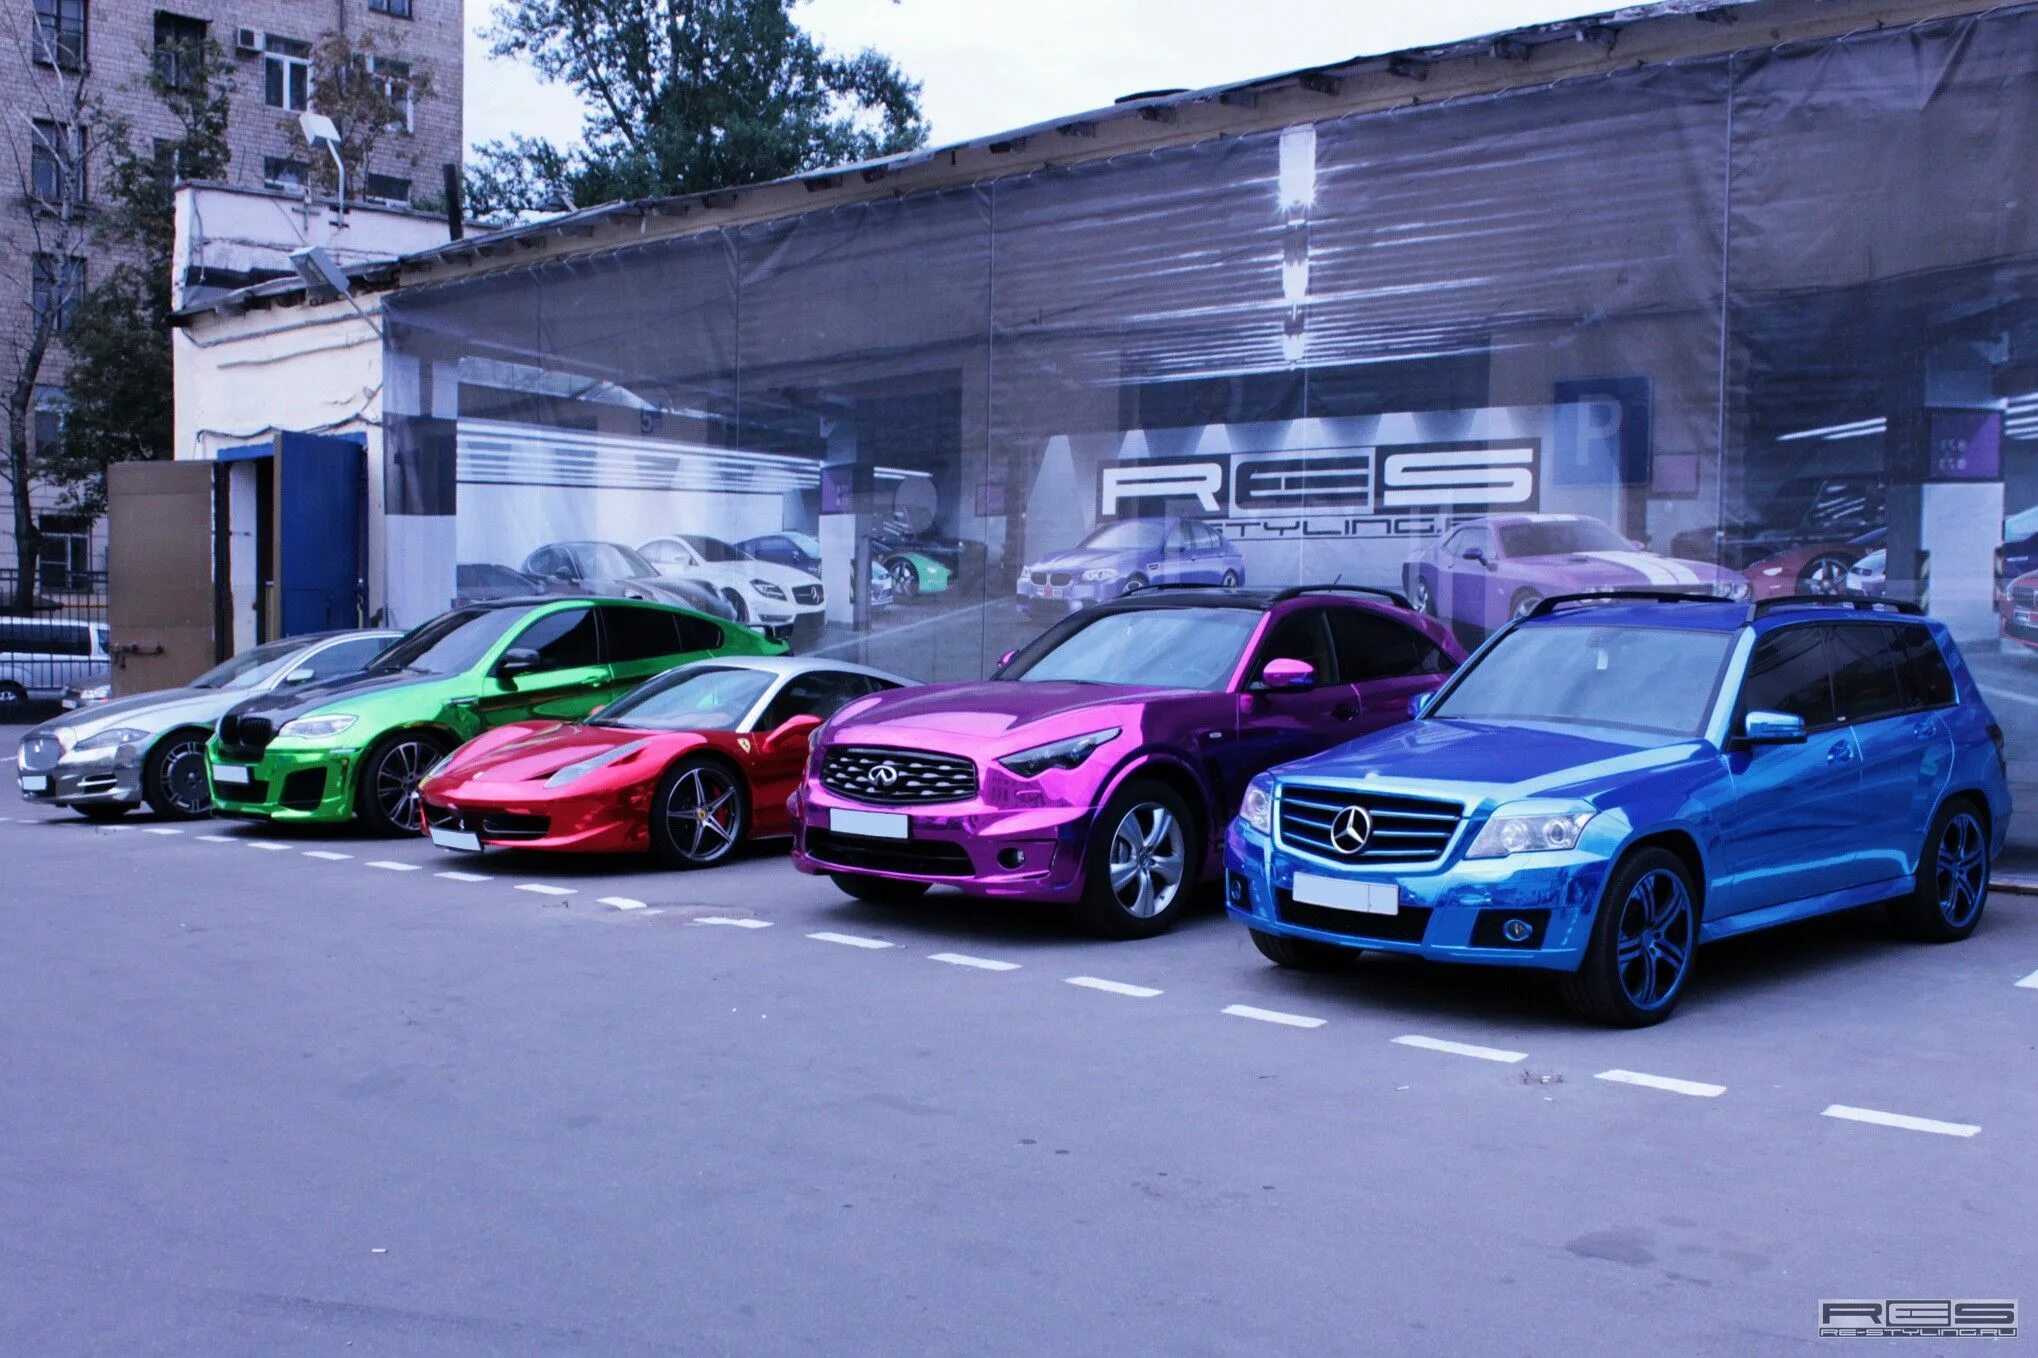 Цветной авто. Мерседес хамелеон. Разноцветные автомобили. Яркие цвета машин. Необычные цвета автомобилей.